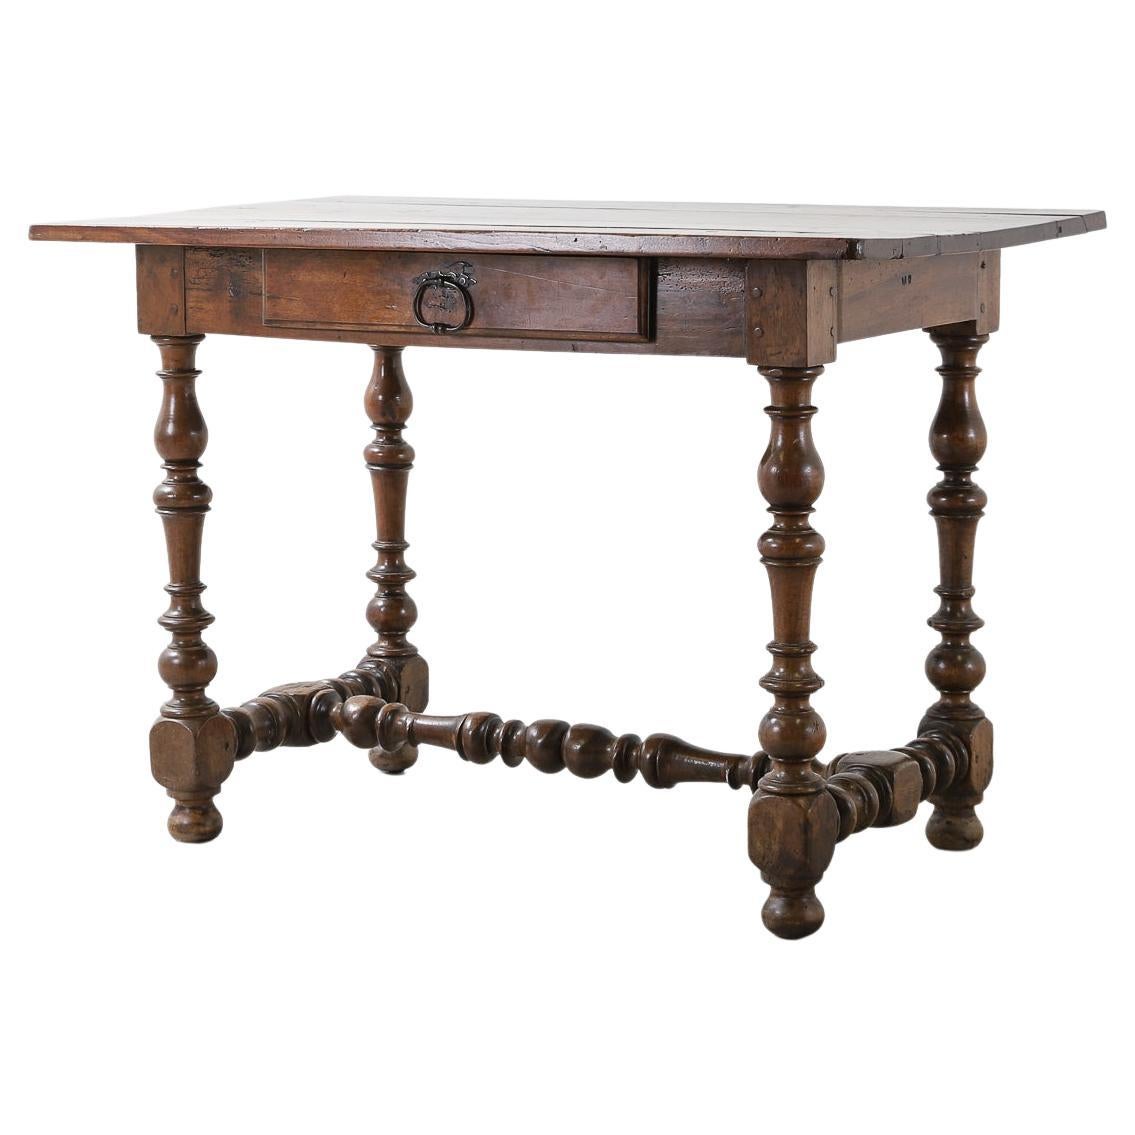 Table à un tiroir en chêne du début du XVIIIe siècle avec pieds tournés